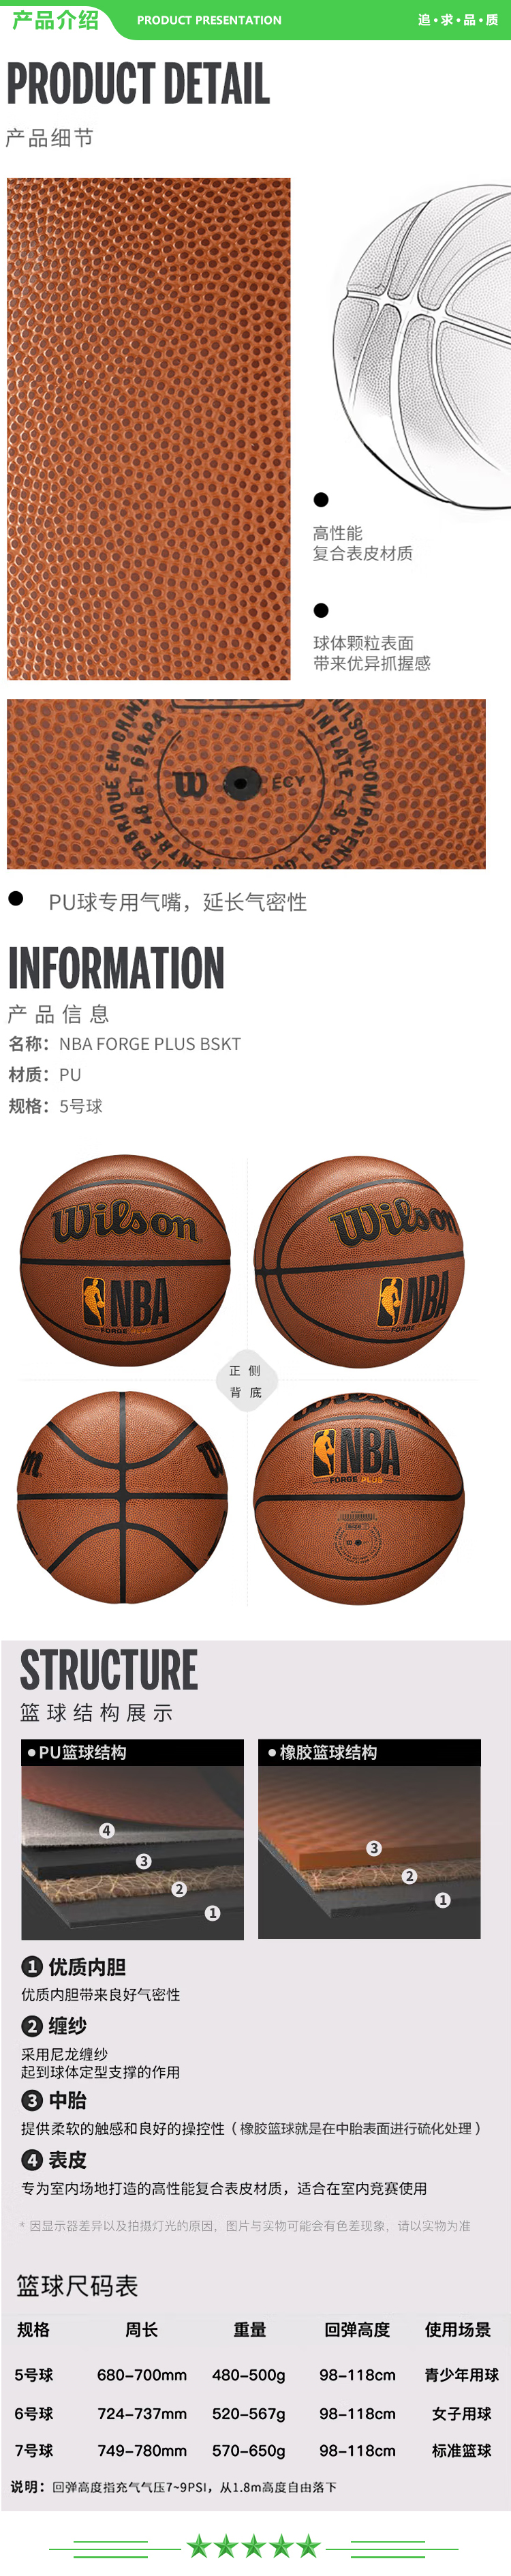 威尔胜 Wilson WTB8100IB05CN  5号 篮球 NBAFORGE系列篮球吸湿PU室内外通用青少年 .jpg